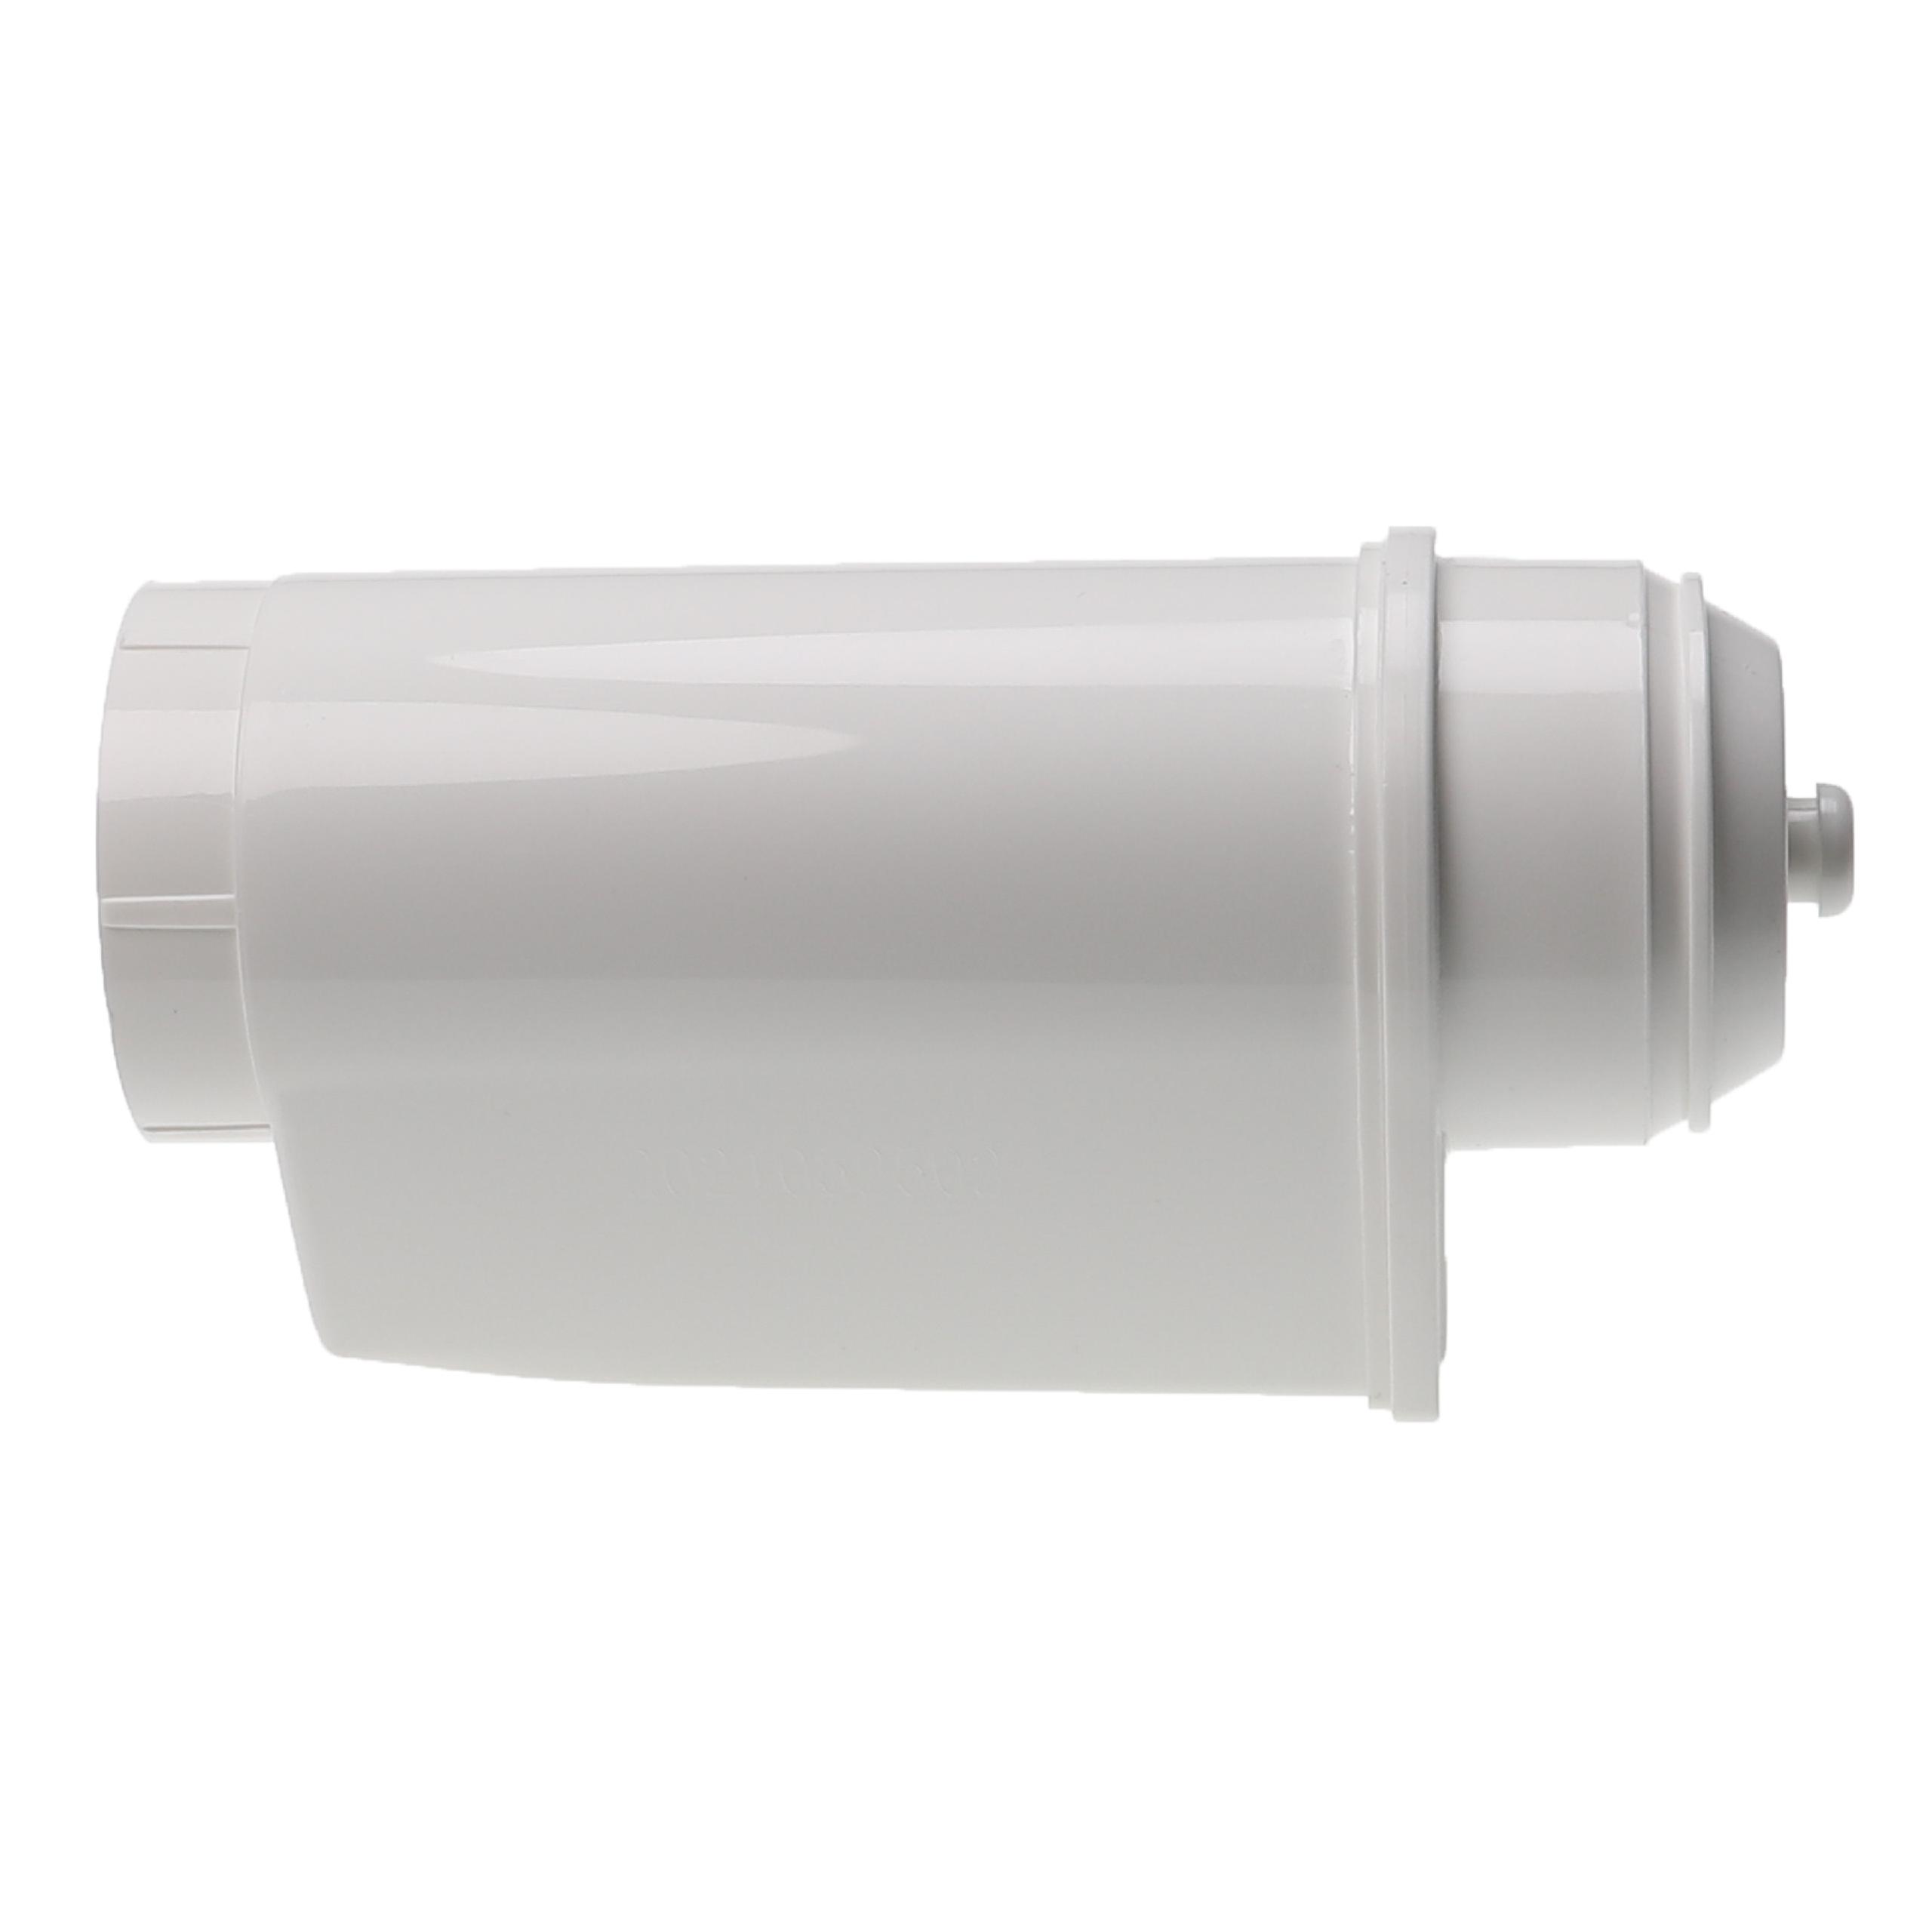 2x filtro agua reemplaza Siemens TZ70033 para cafeteras Bosch - blanco